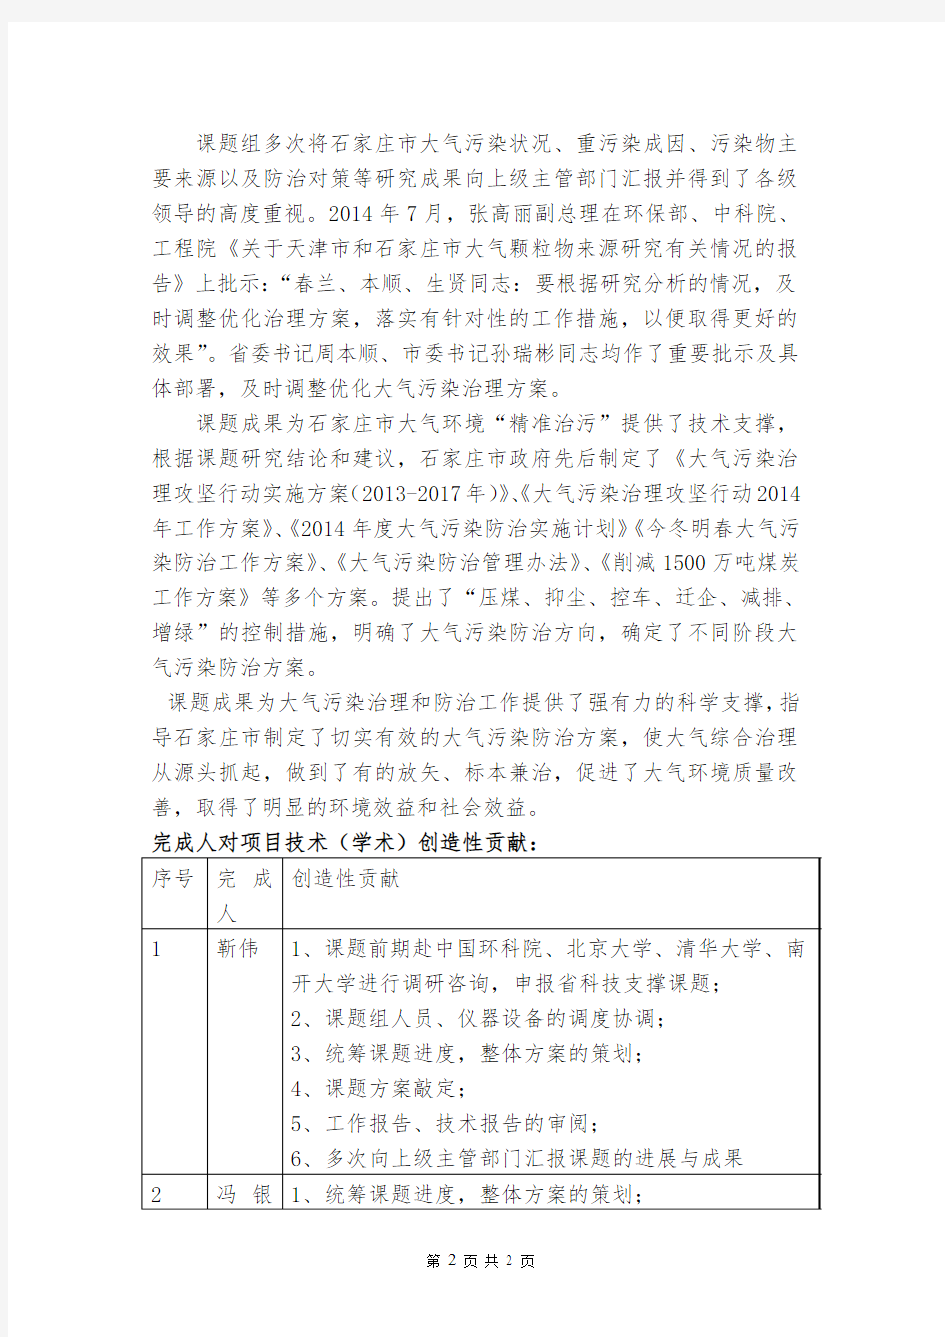 2015年度河北省科学技术奖励申报项目公示